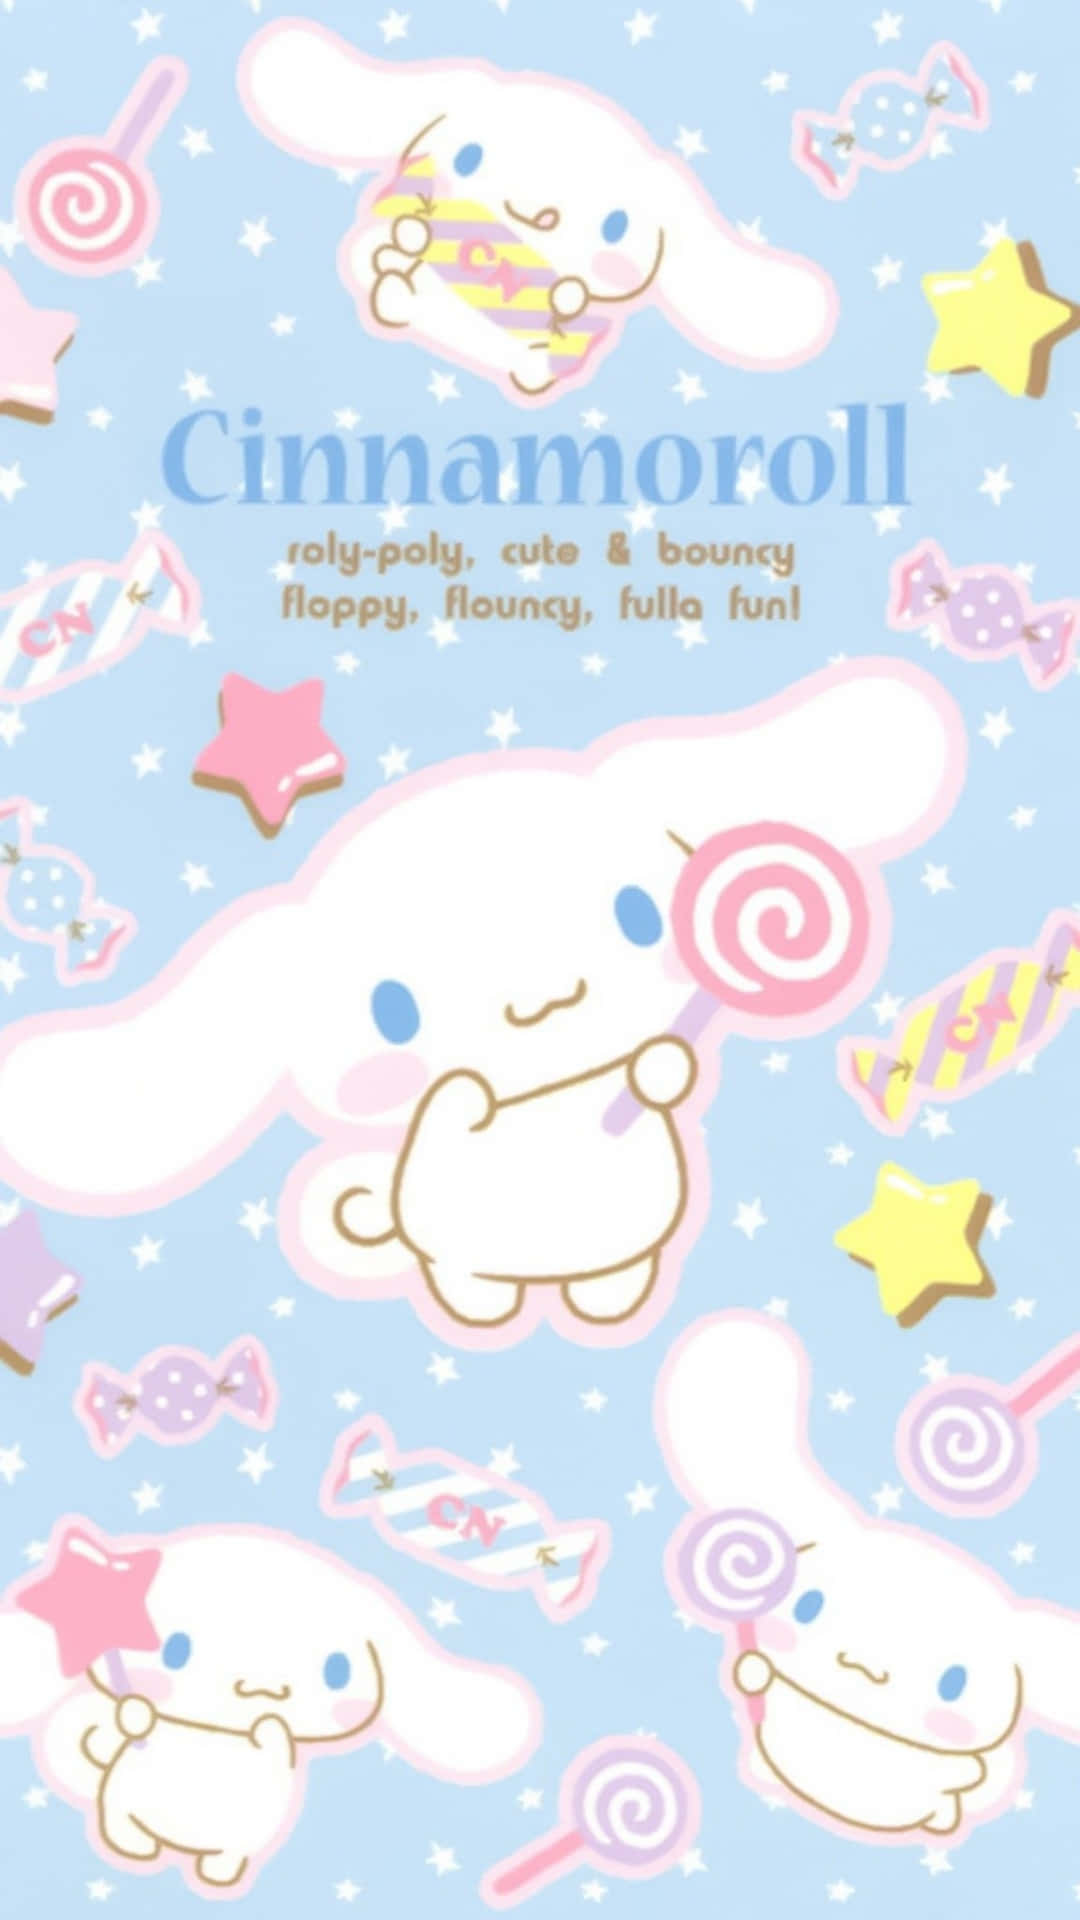 Nyde søde øjeblikke med Cinnamoroll Wallpaper